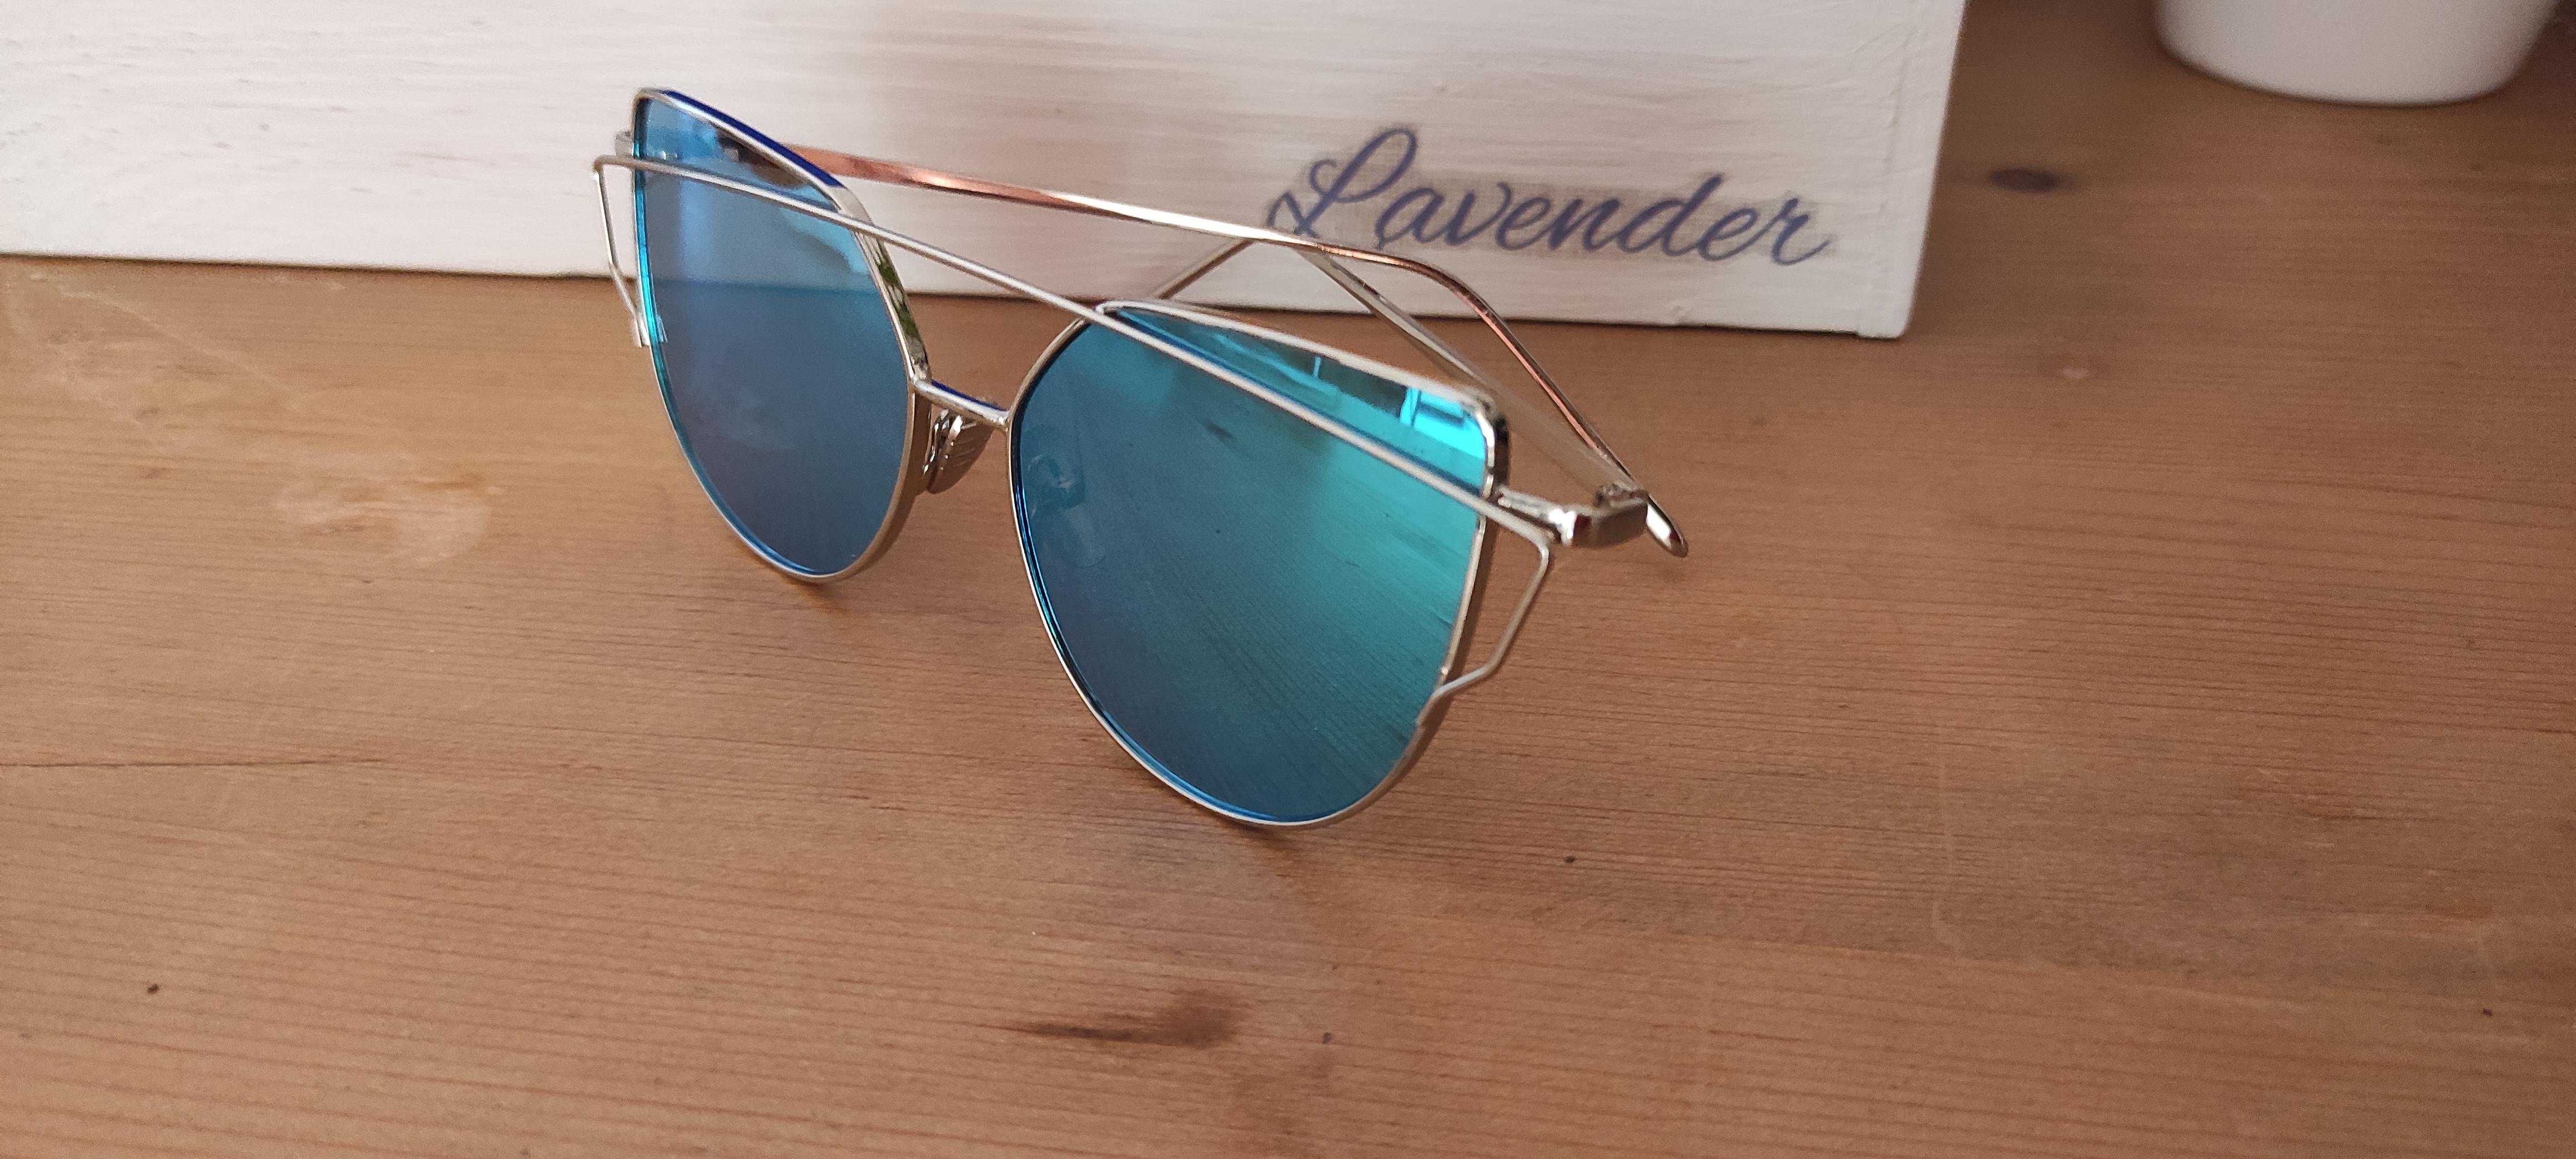 Okulary przeciwsłoneczne damskie niebieskie szkła Elegance